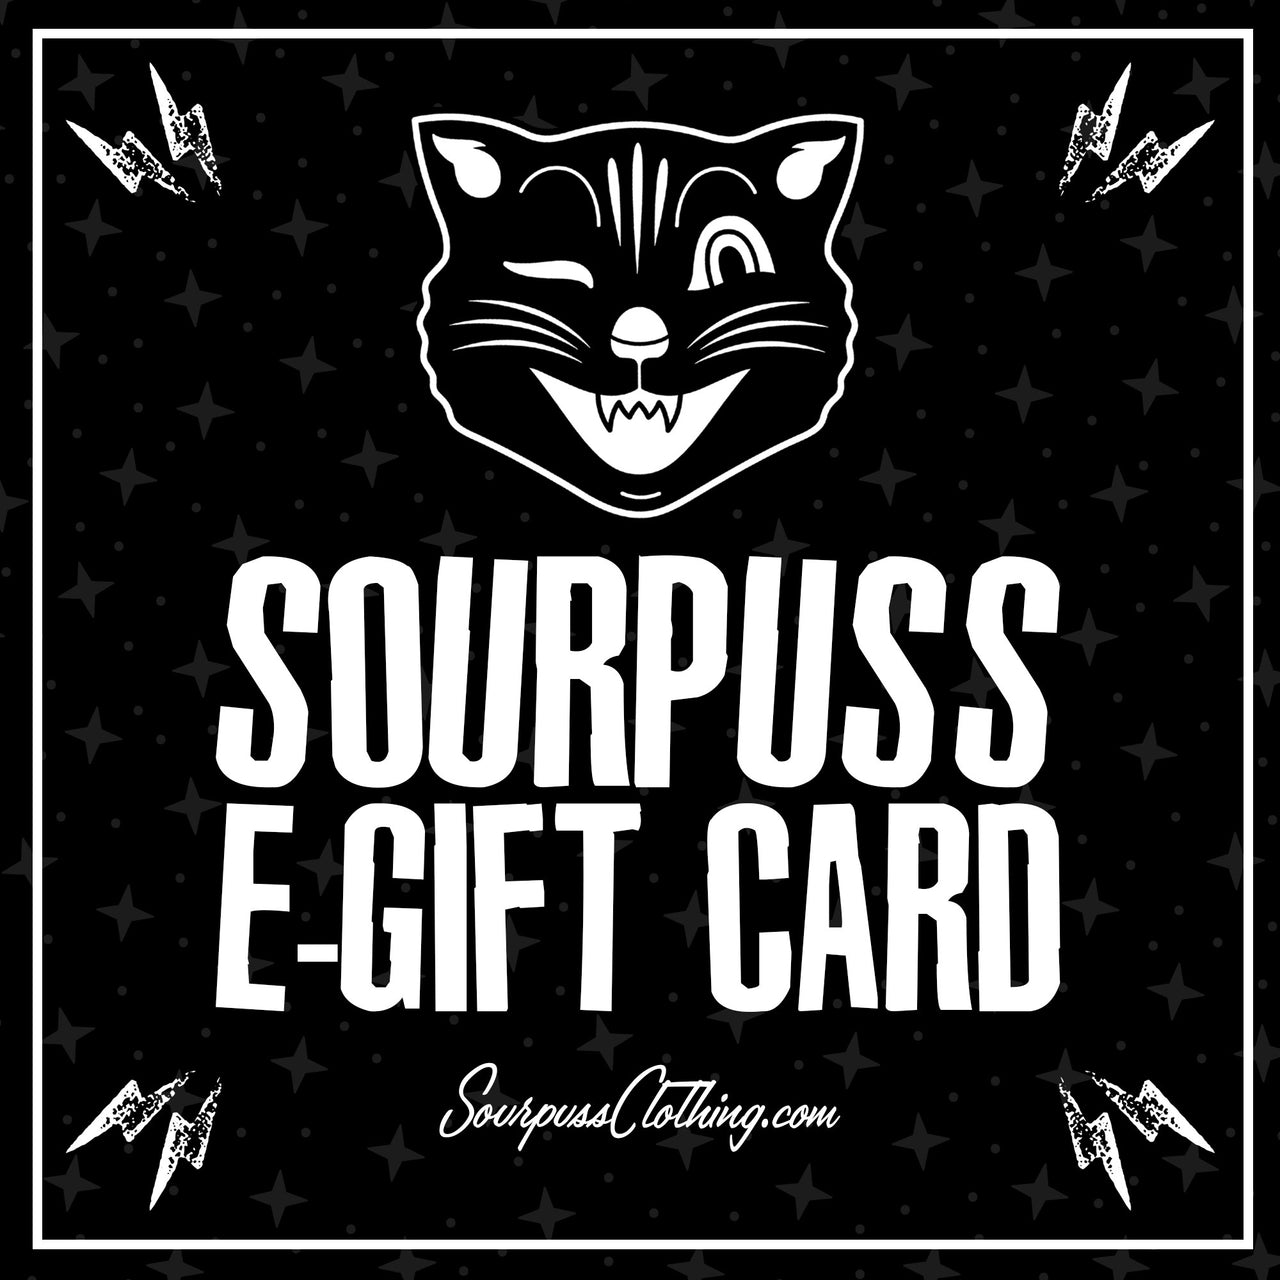 SOURPUSS GIFT CARD